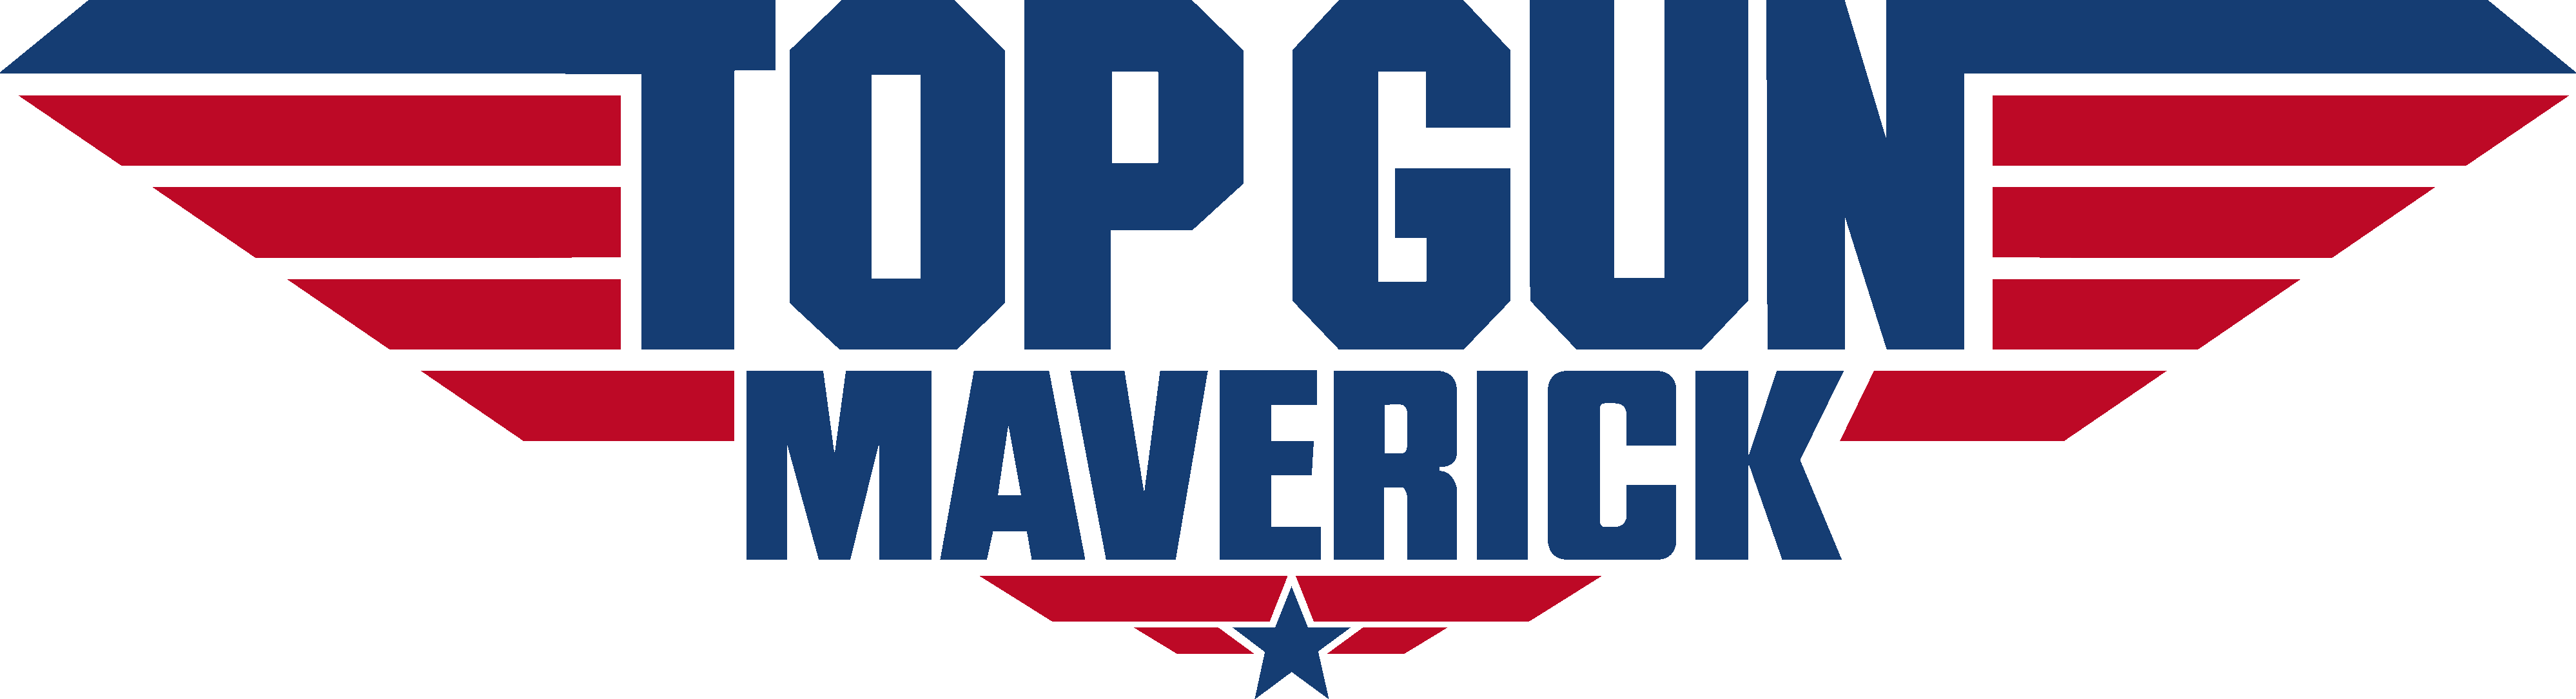 Top Gun Maverick 2022 Logos — The Movie Database Tmdb